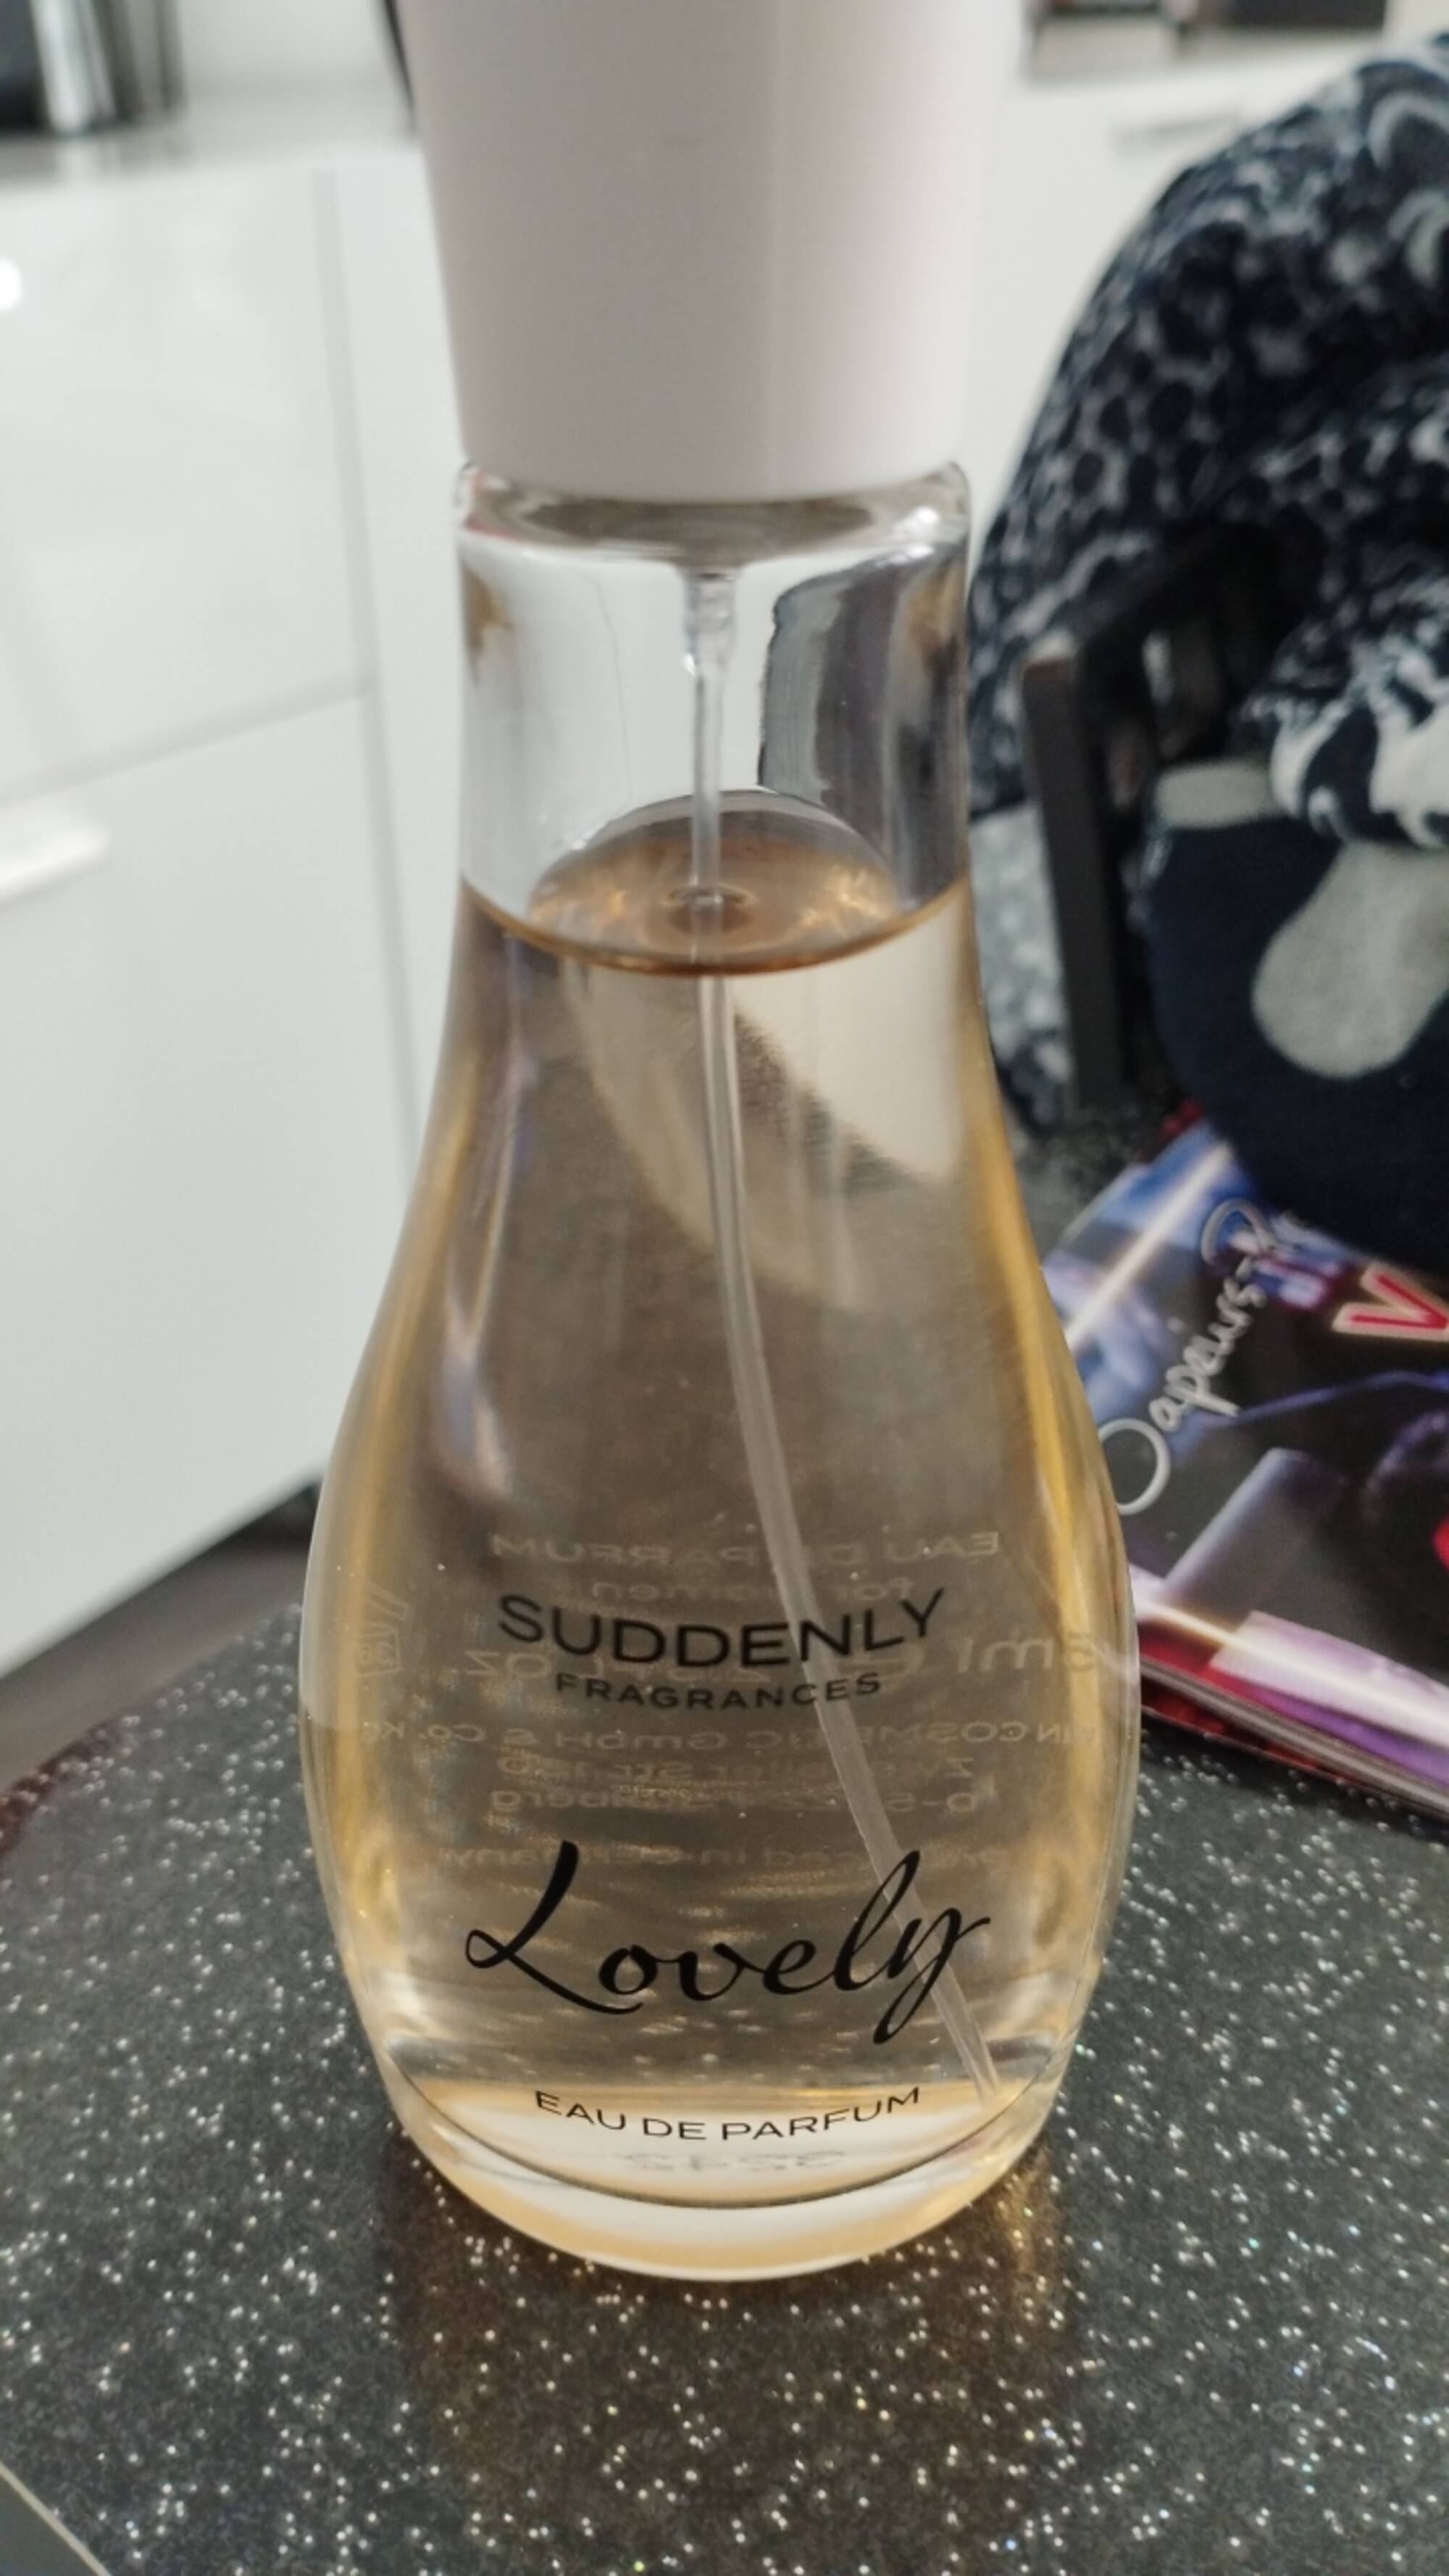 LIDL - Suddenly Lovely - Eau de parfum